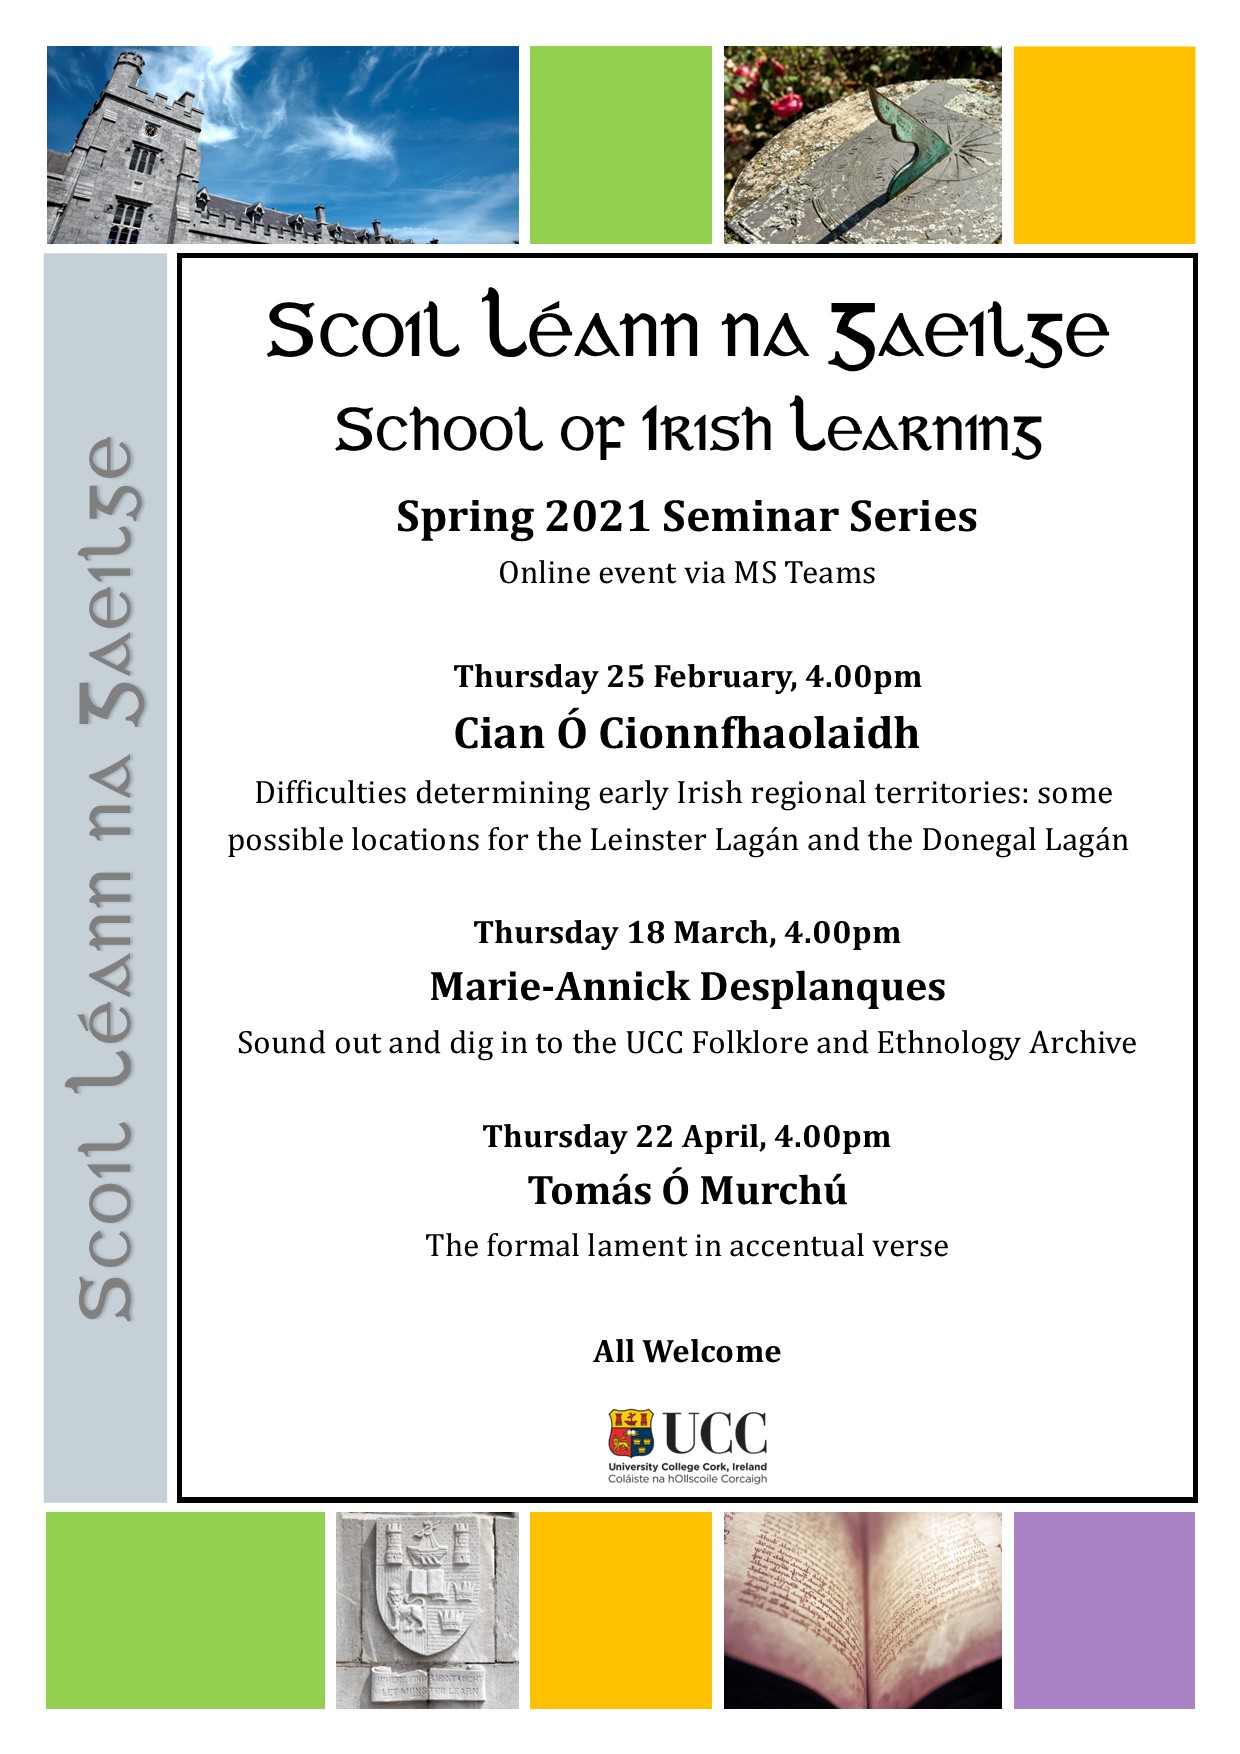 School of Irish Learning Spring Seminar 2021